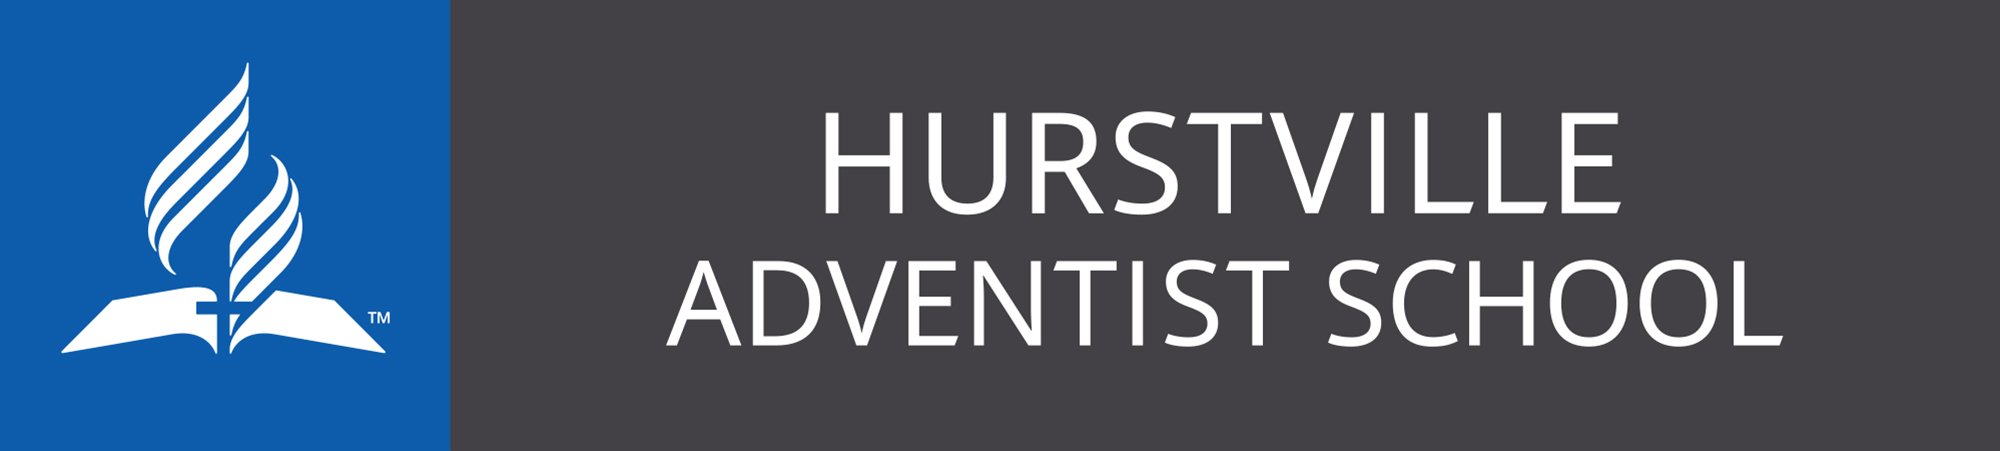 Hurstville_Logo_CMYK